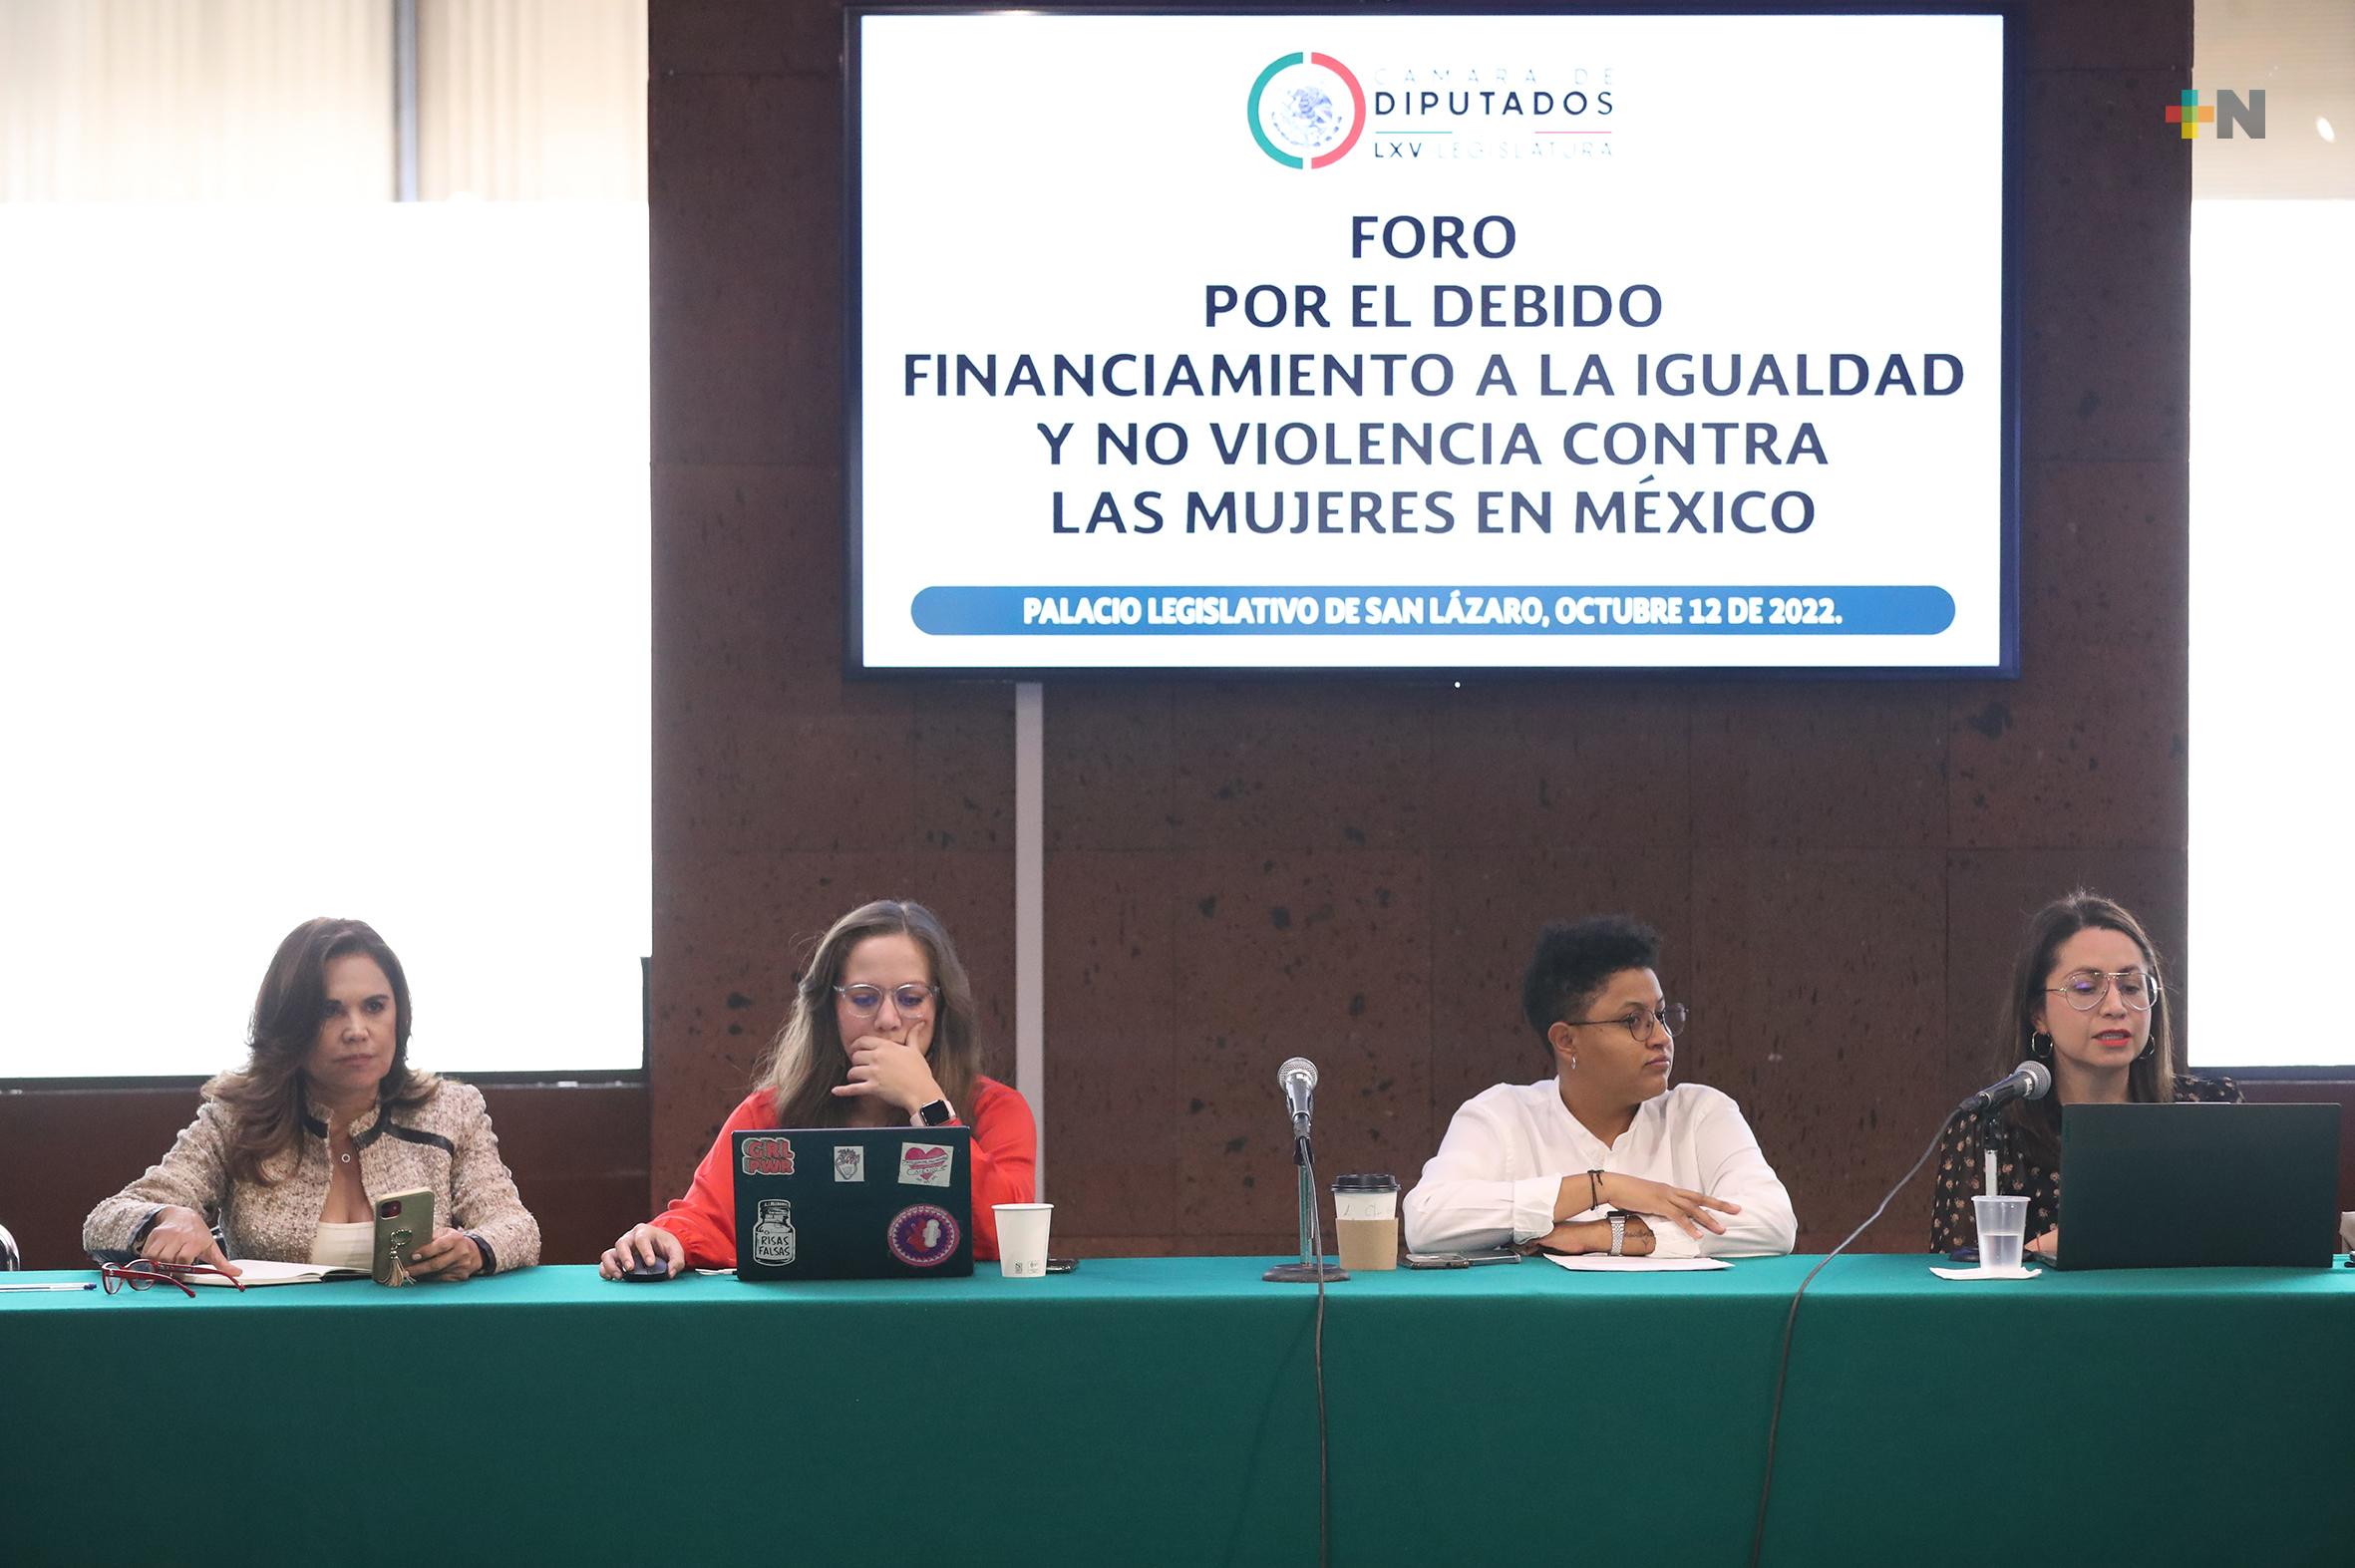 Concluye foro “Por el debido financiamiento a la igualdad y no violencia contra las mujeres en México”